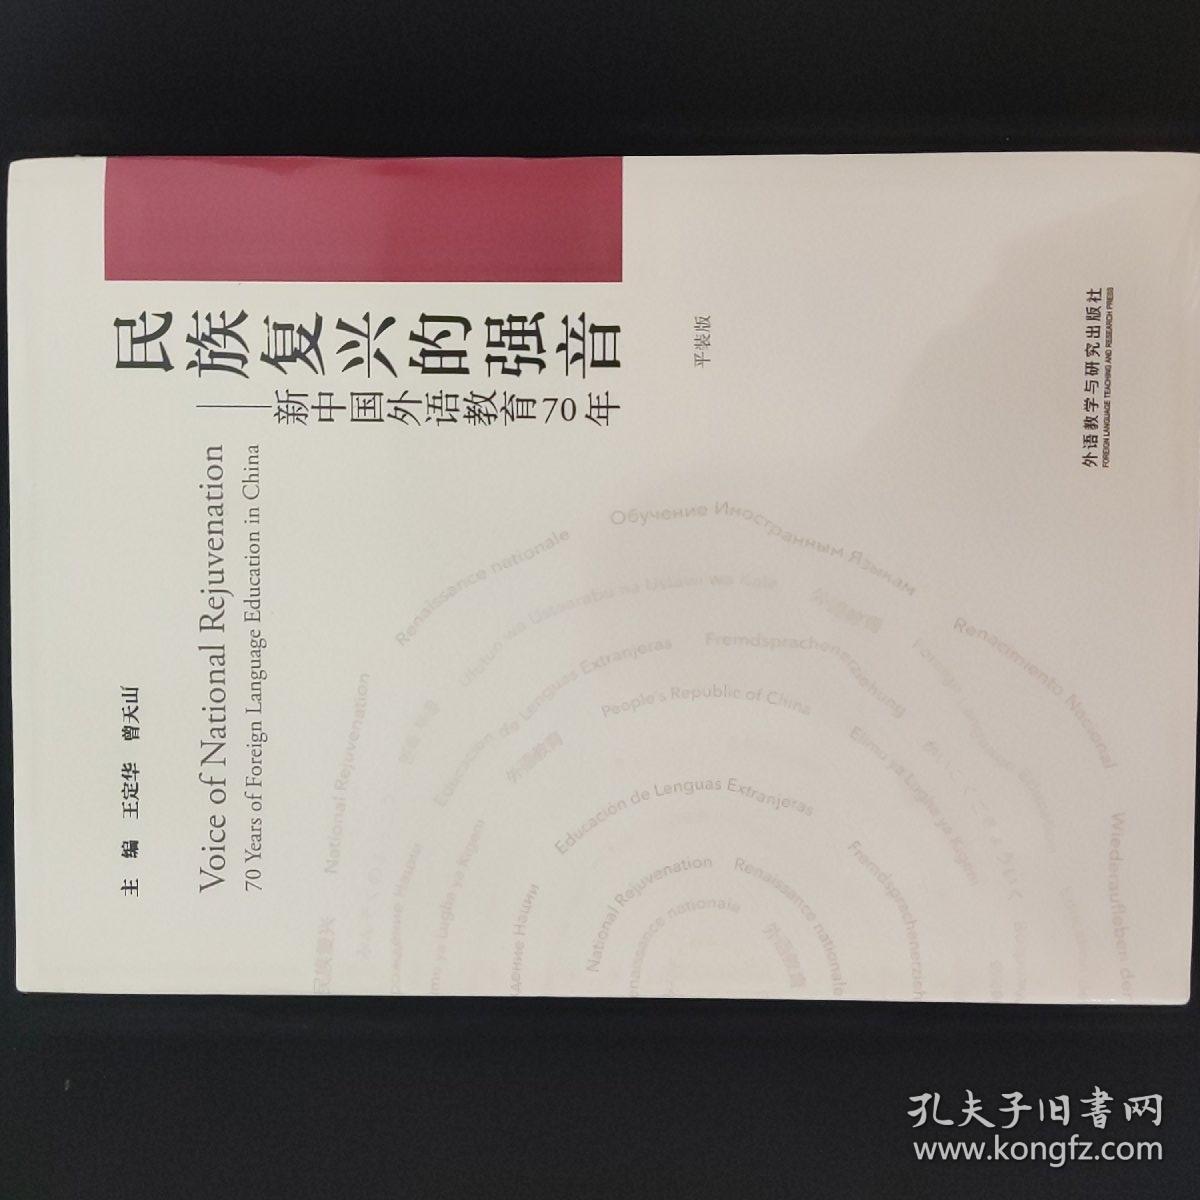 民族复兴的强音-新中国外语教育70年(平装版)